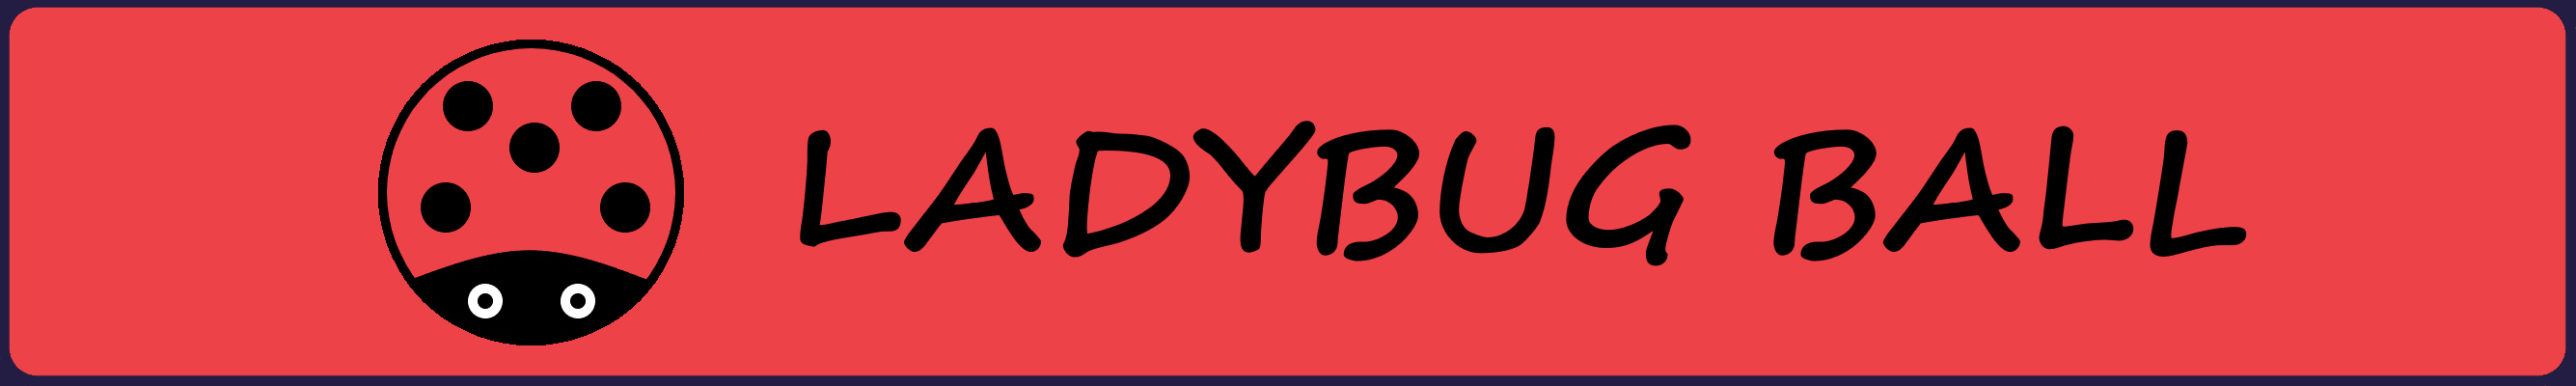 Ladybug Ball - Github Game Off 2021